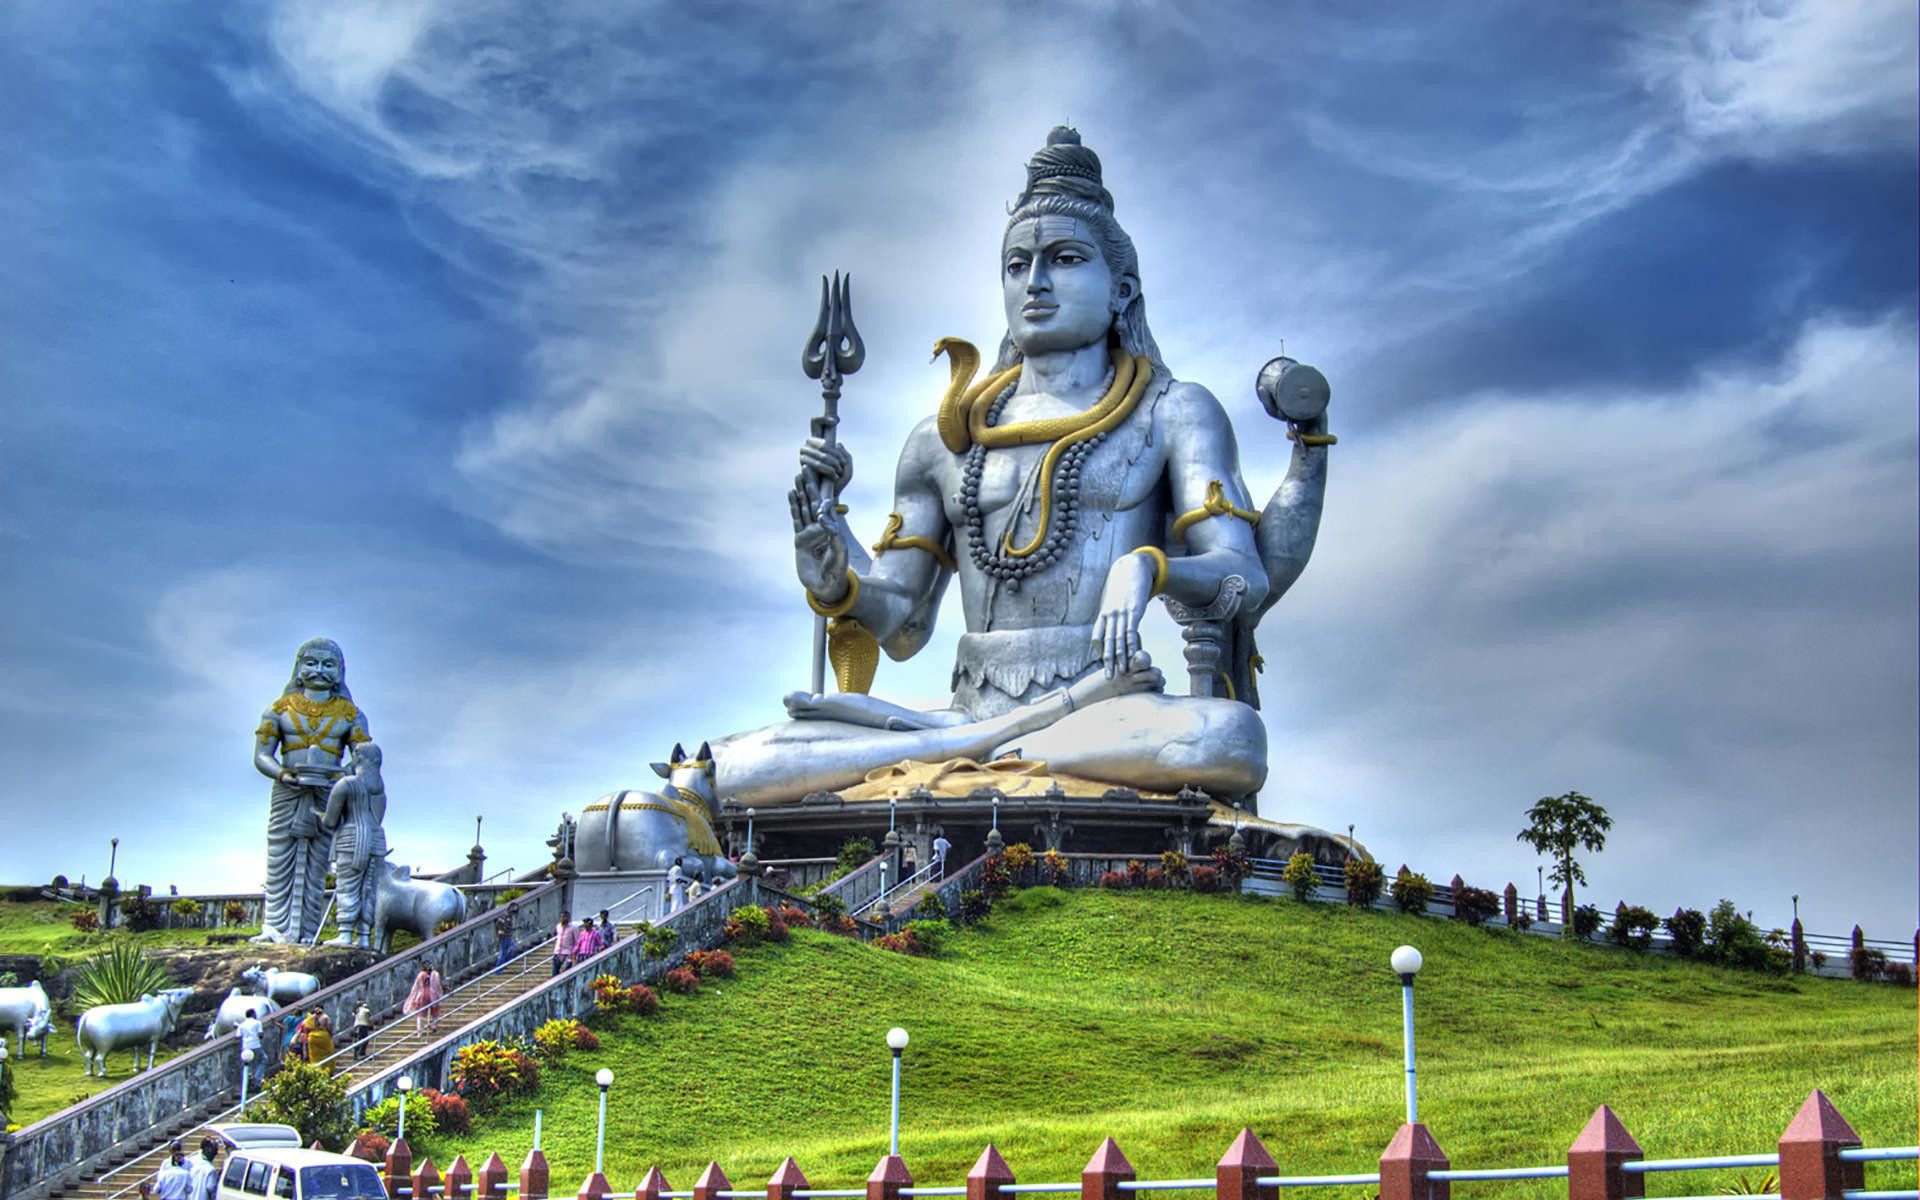 Lord Shiva HD Wallpaper